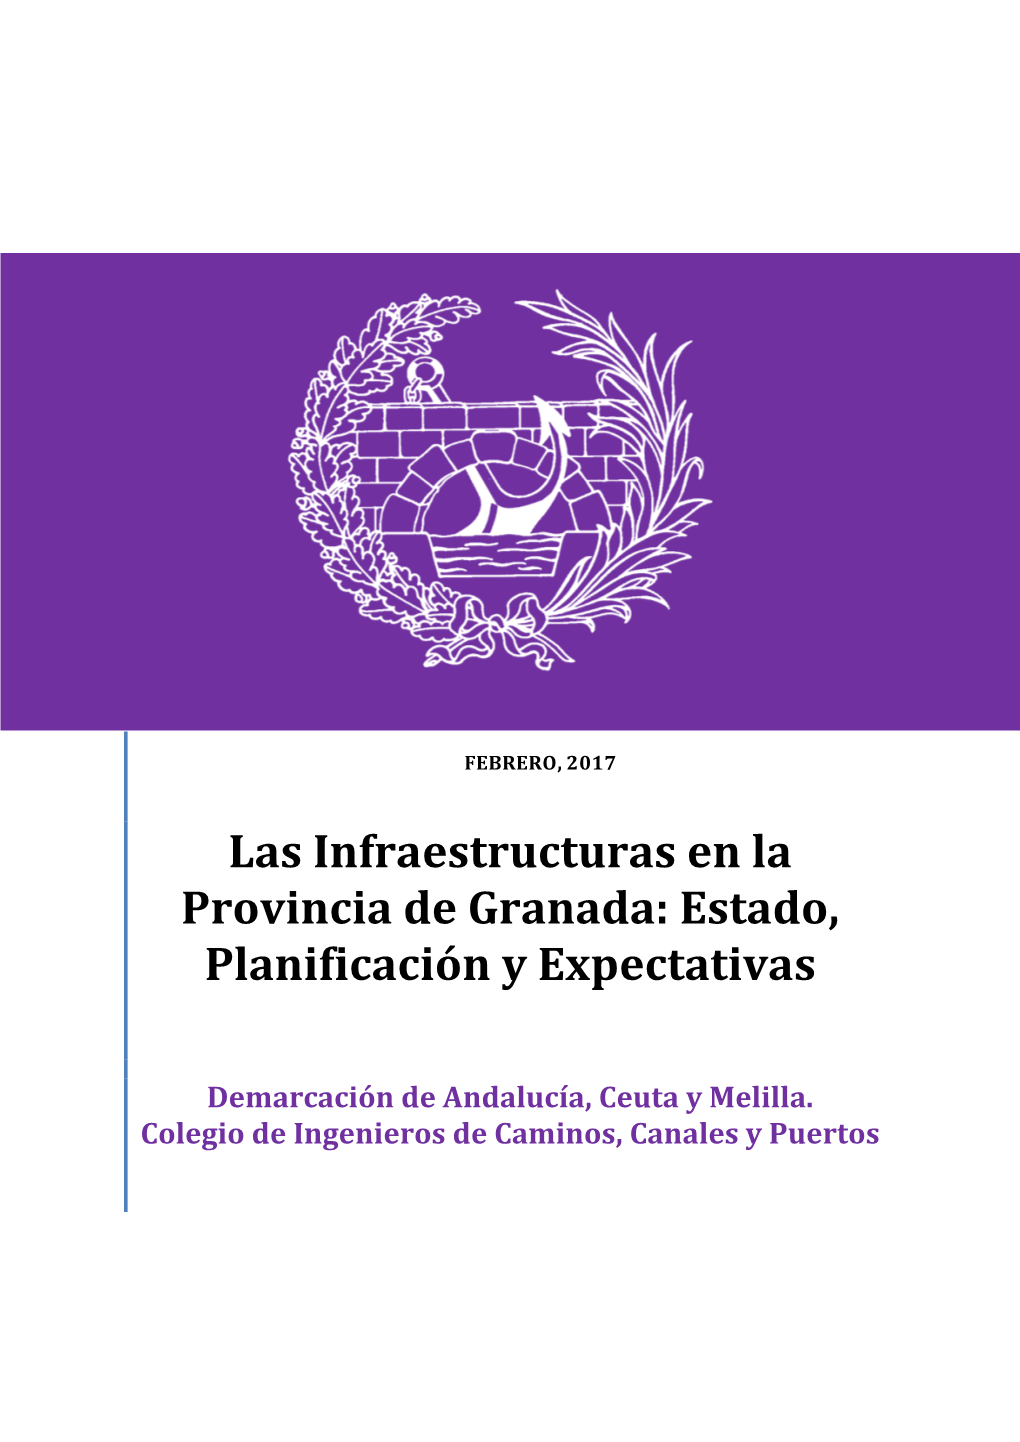 Las Infraestructuras En La Provincia De Granada: Estado, Planificación Y Expectativas